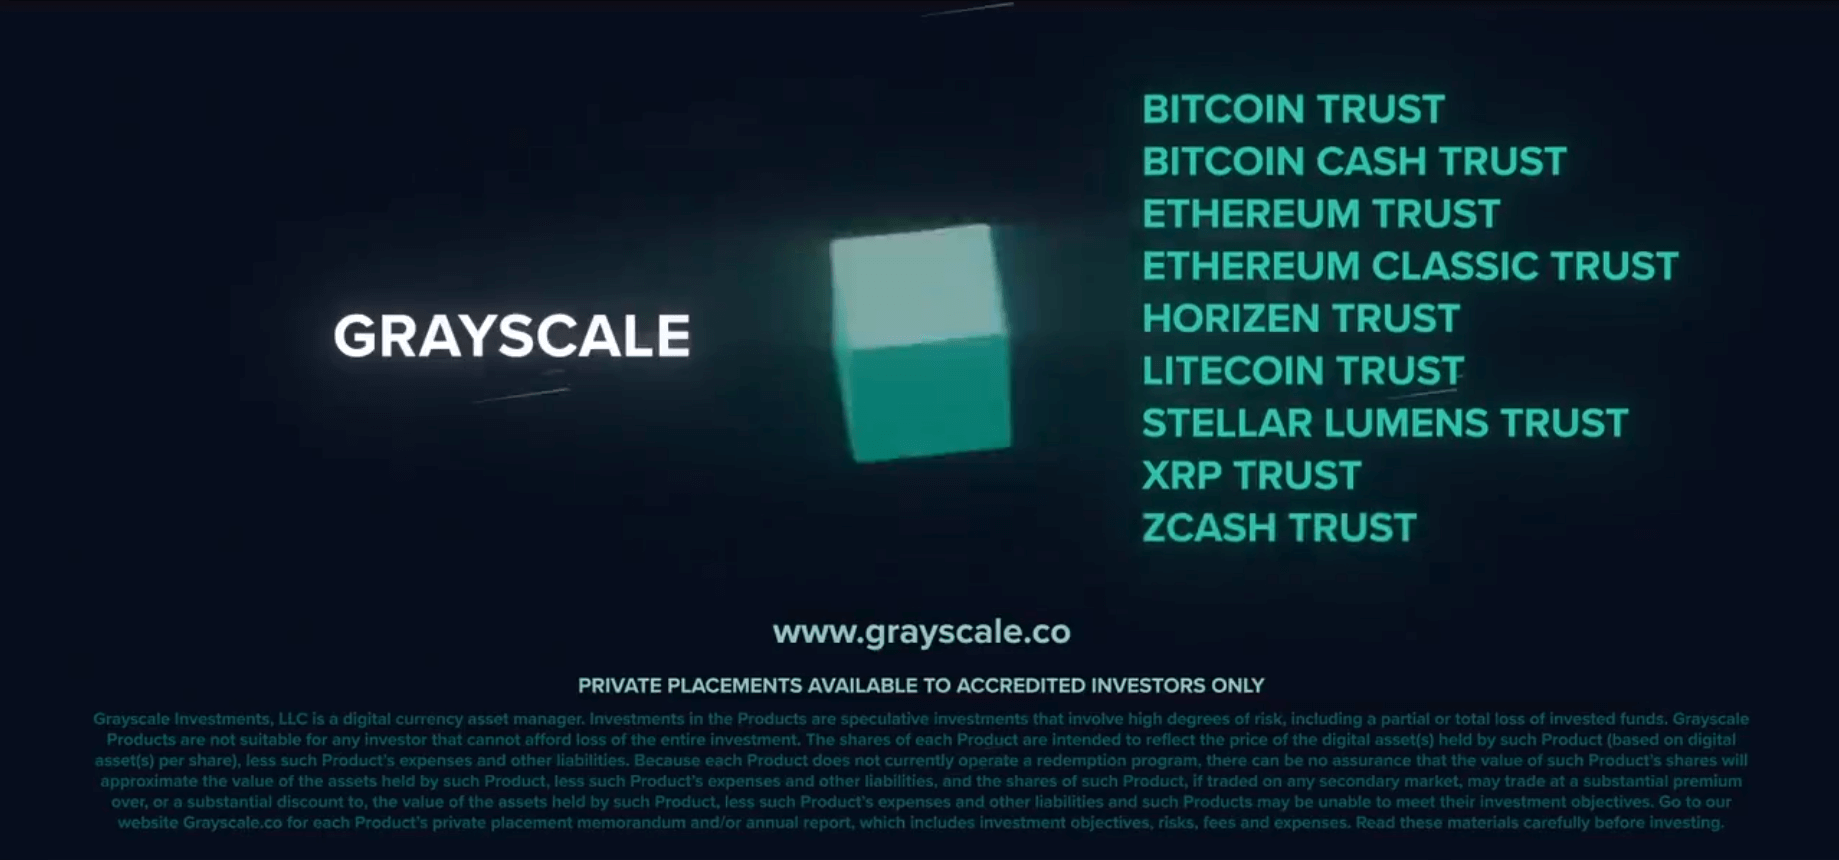 Реклама криптовалют в телевизоре. Заключительный кадр рекламного ролика. Фото.